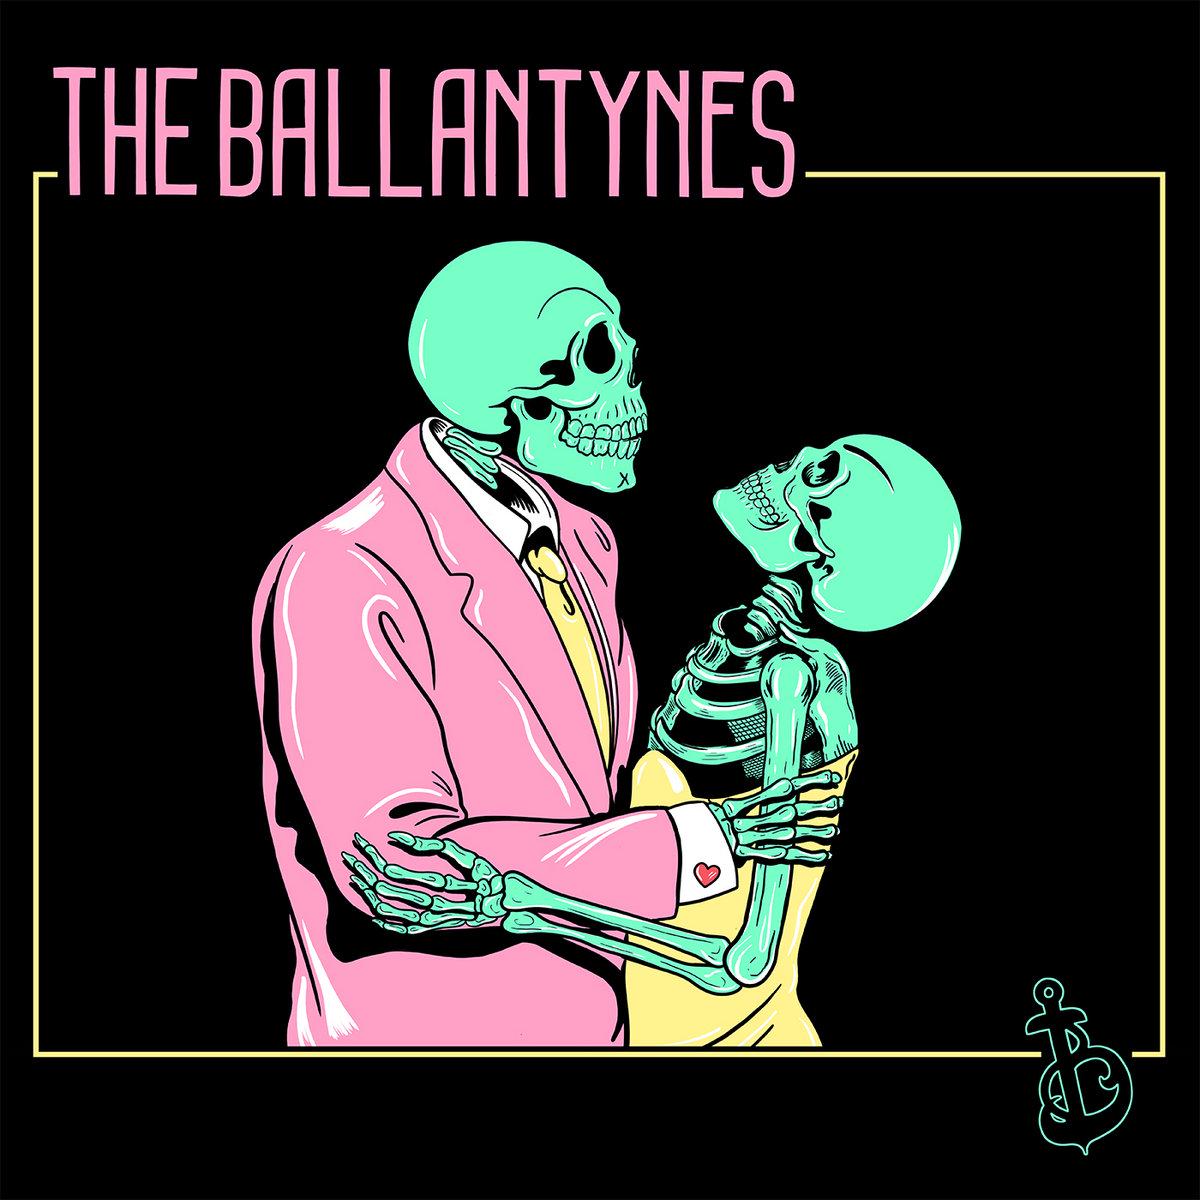 The Ballantynes